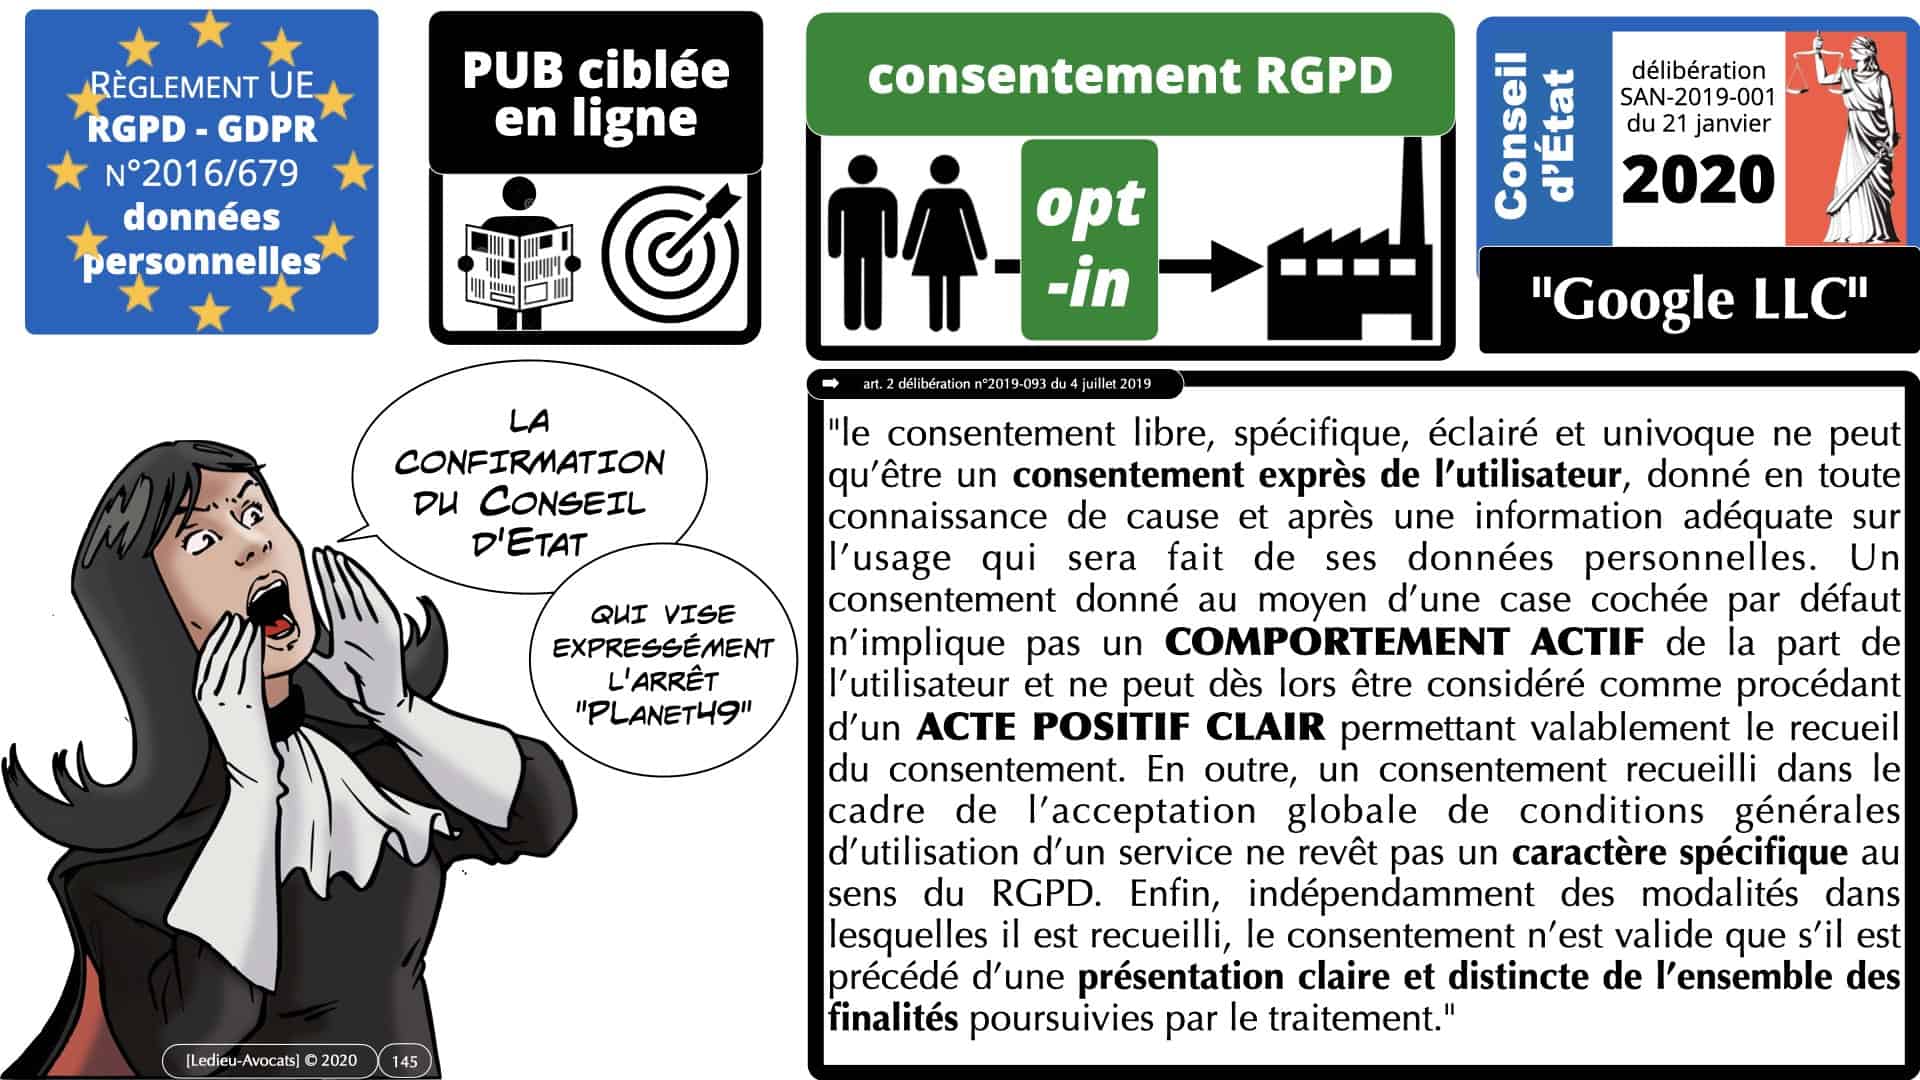 RGPD e-Privacy données personnelles jurisprudence formation Lamy Les Echos 10-02-2021 ©Ledieu-Avocats.145